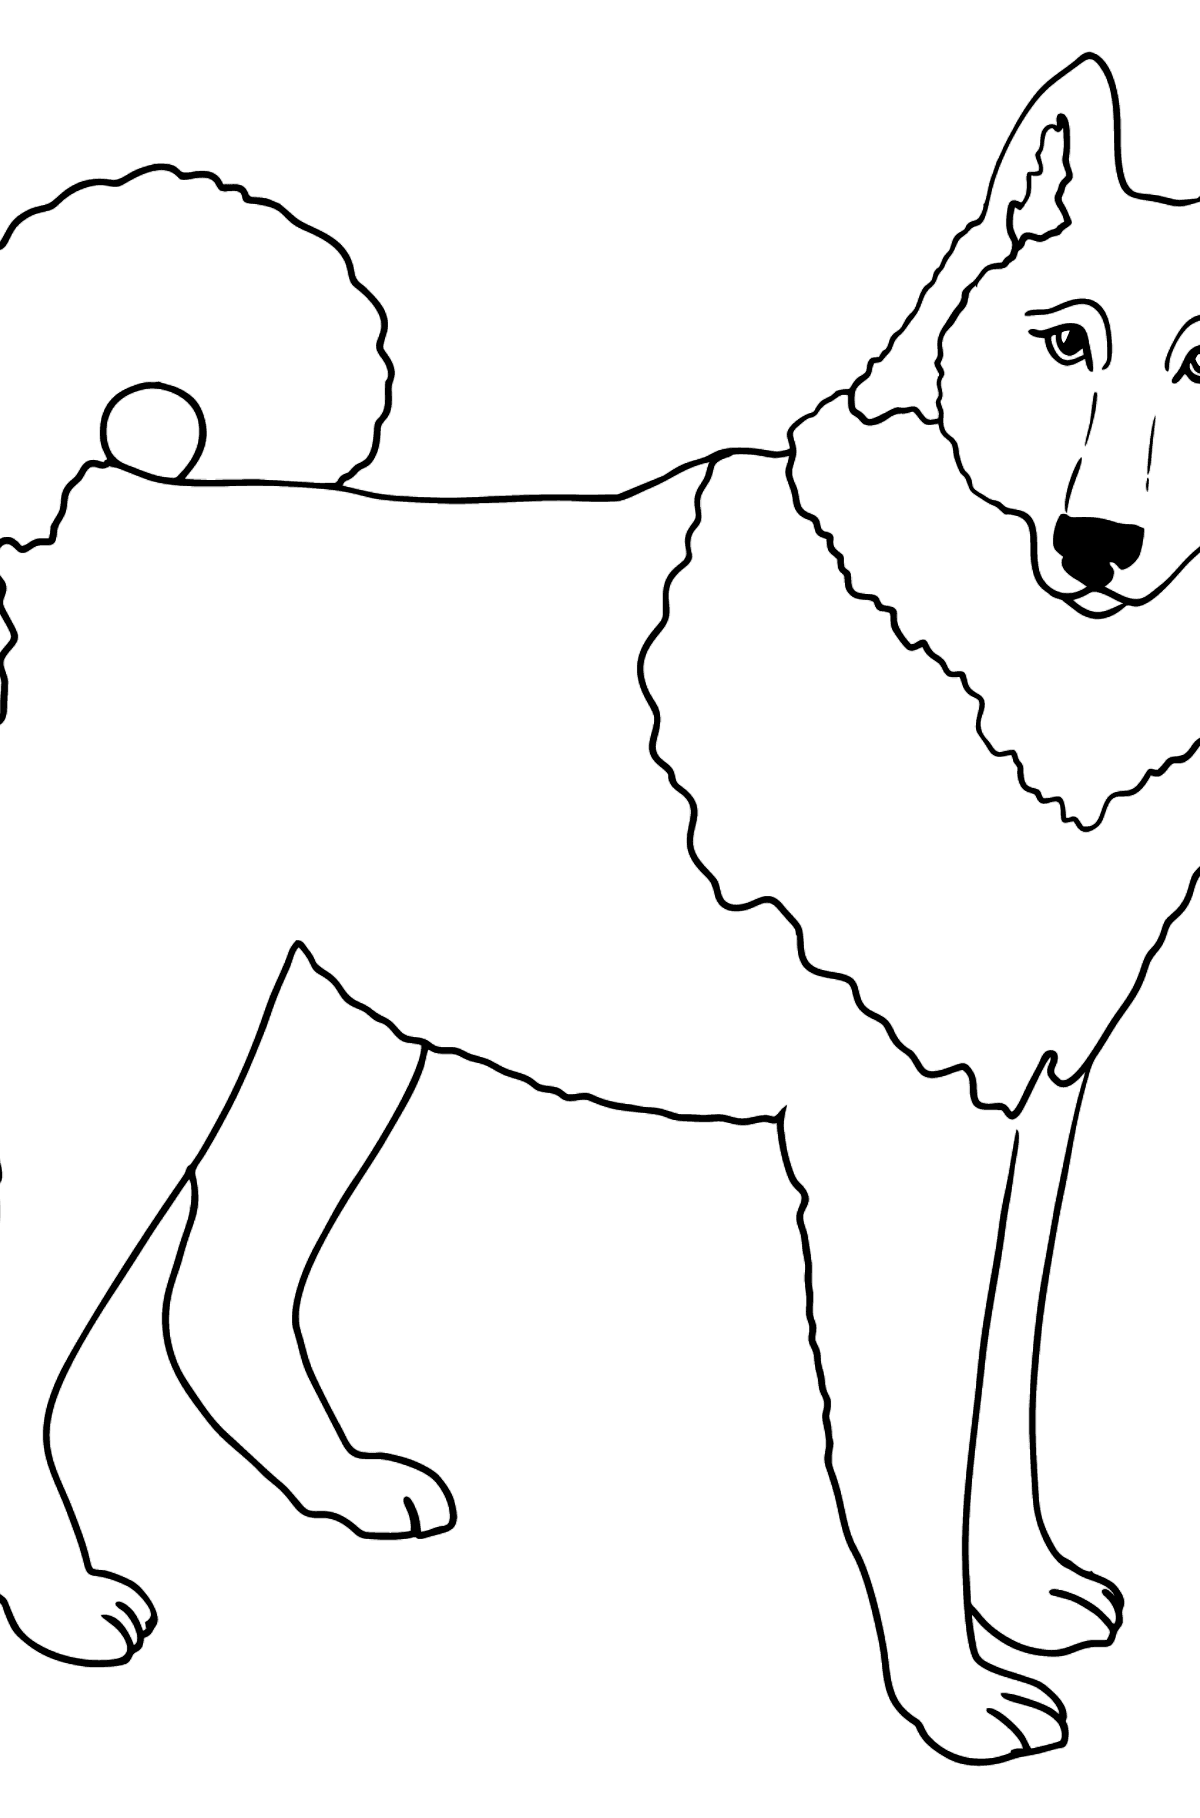 Tegning til fargelegging Siberian Husky (enkelt) - Tegninger til fargelegging for barn